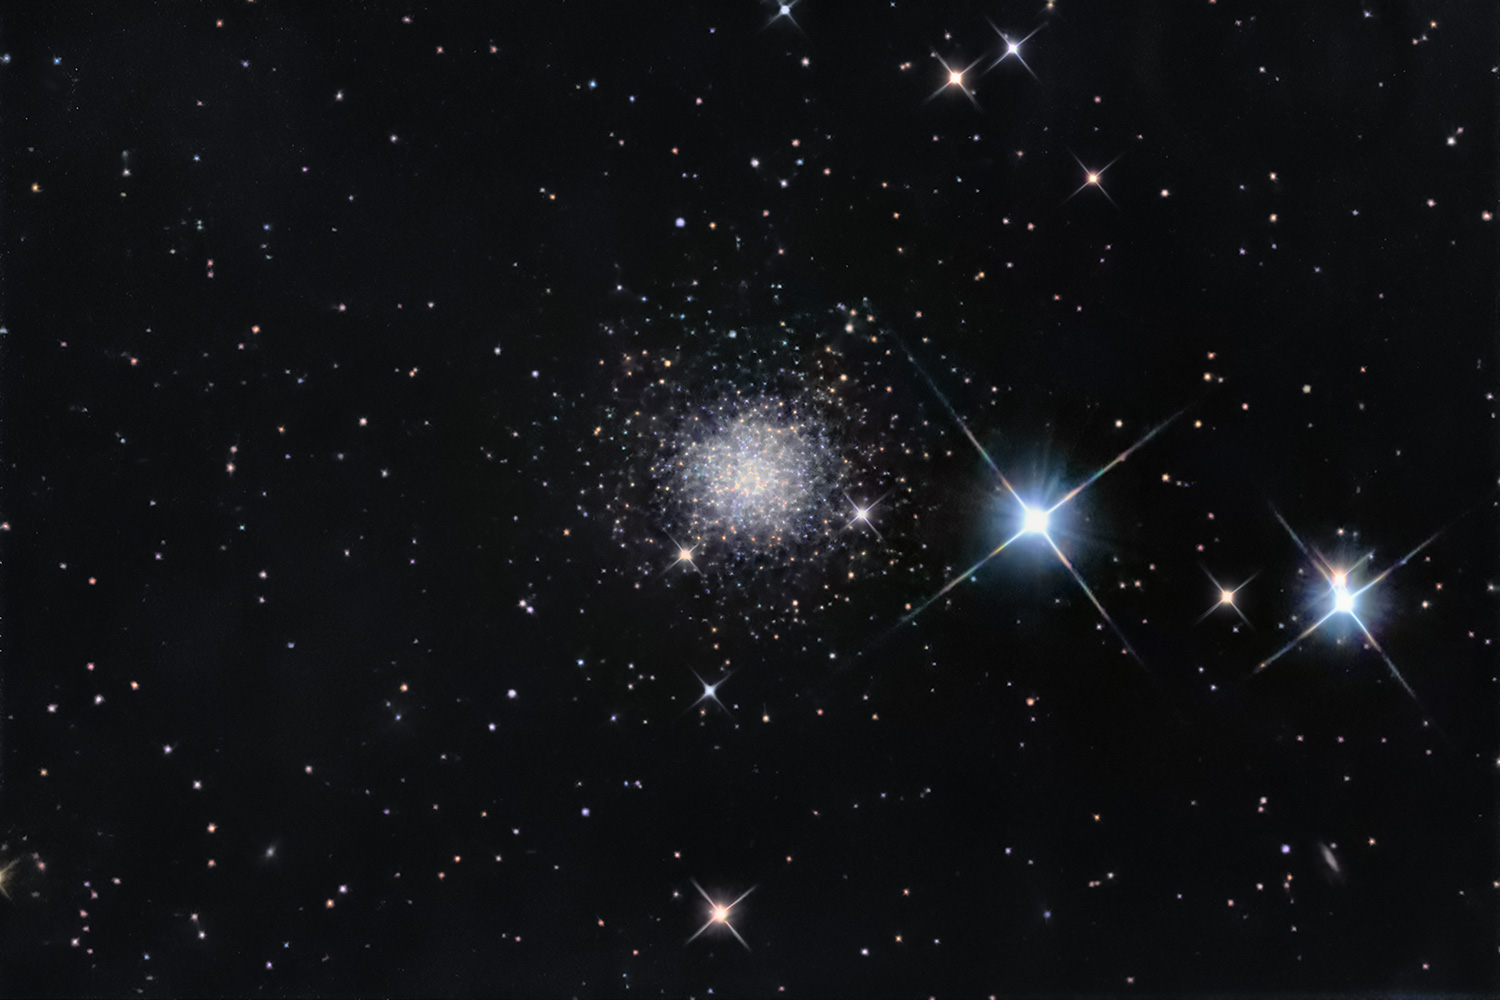 NGC 2419 - The Interglactic Wanderer